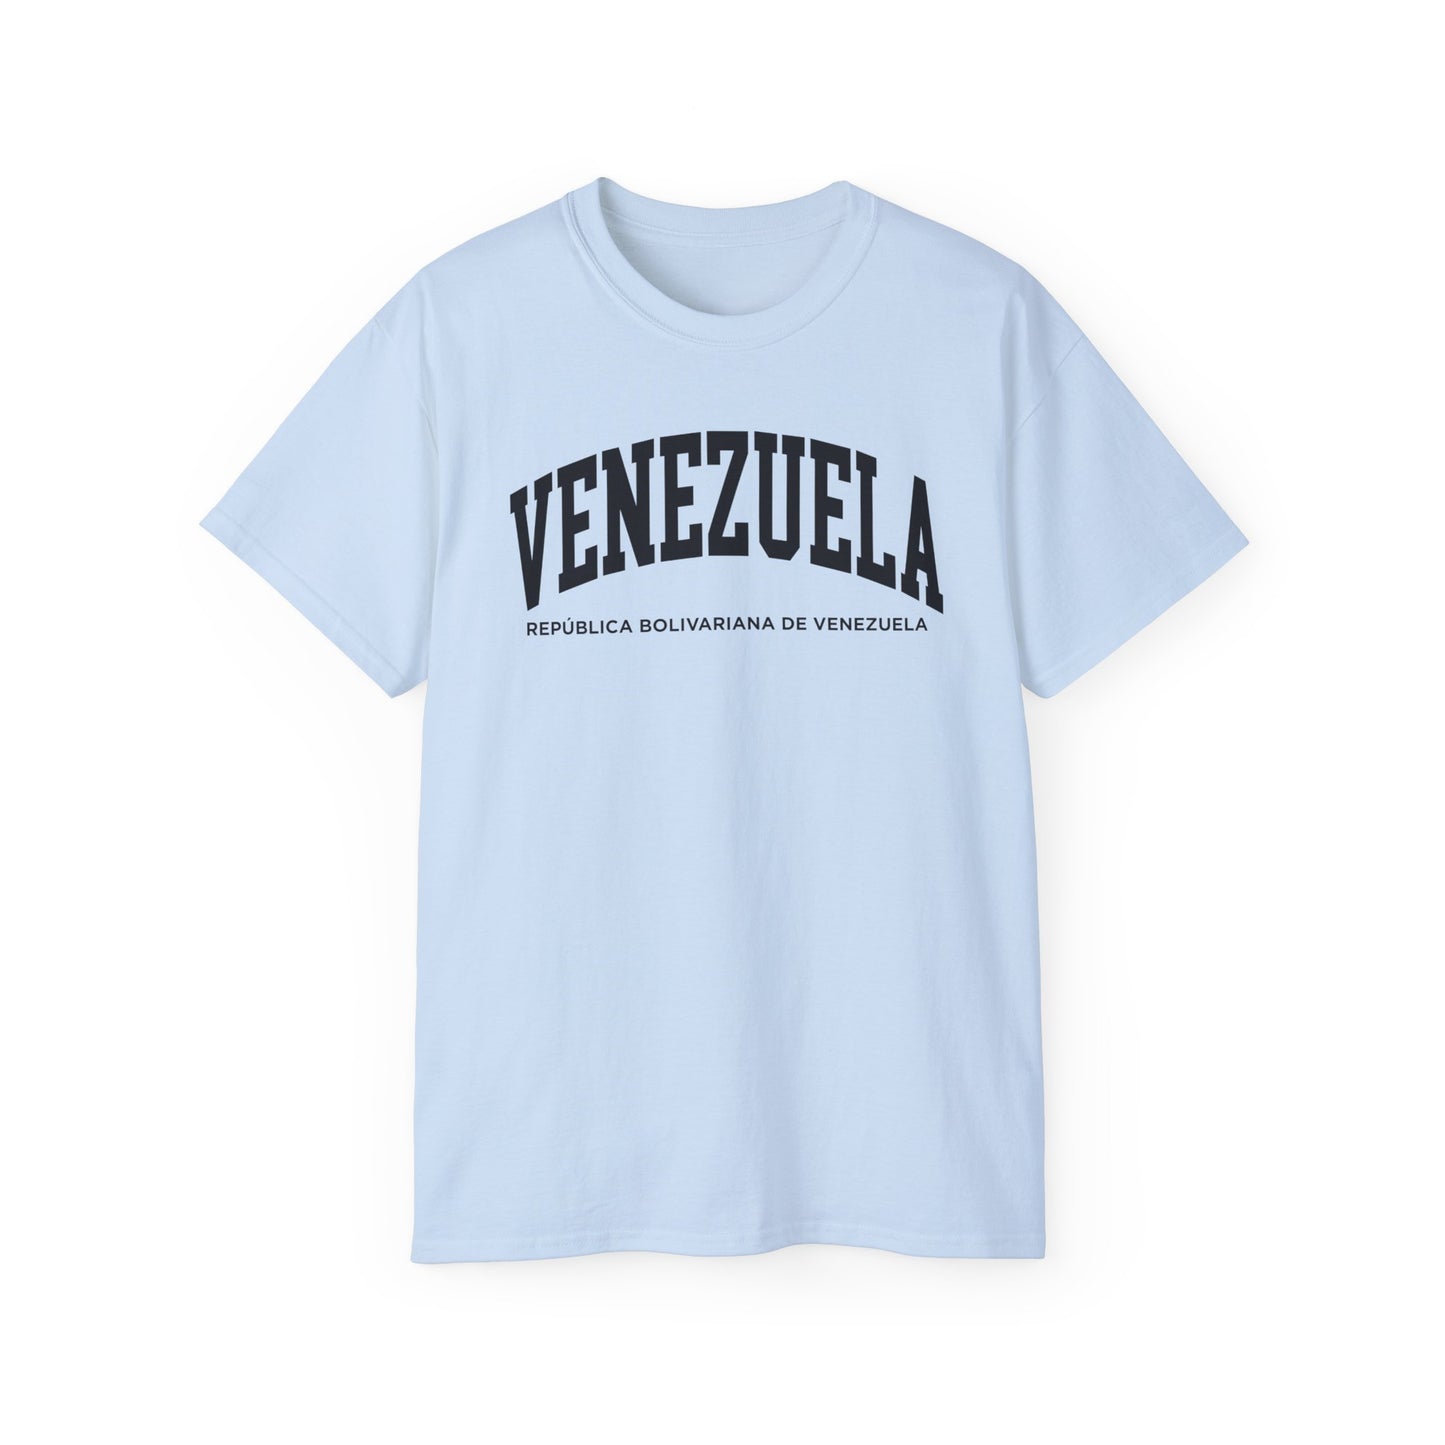 Venezuela Tee